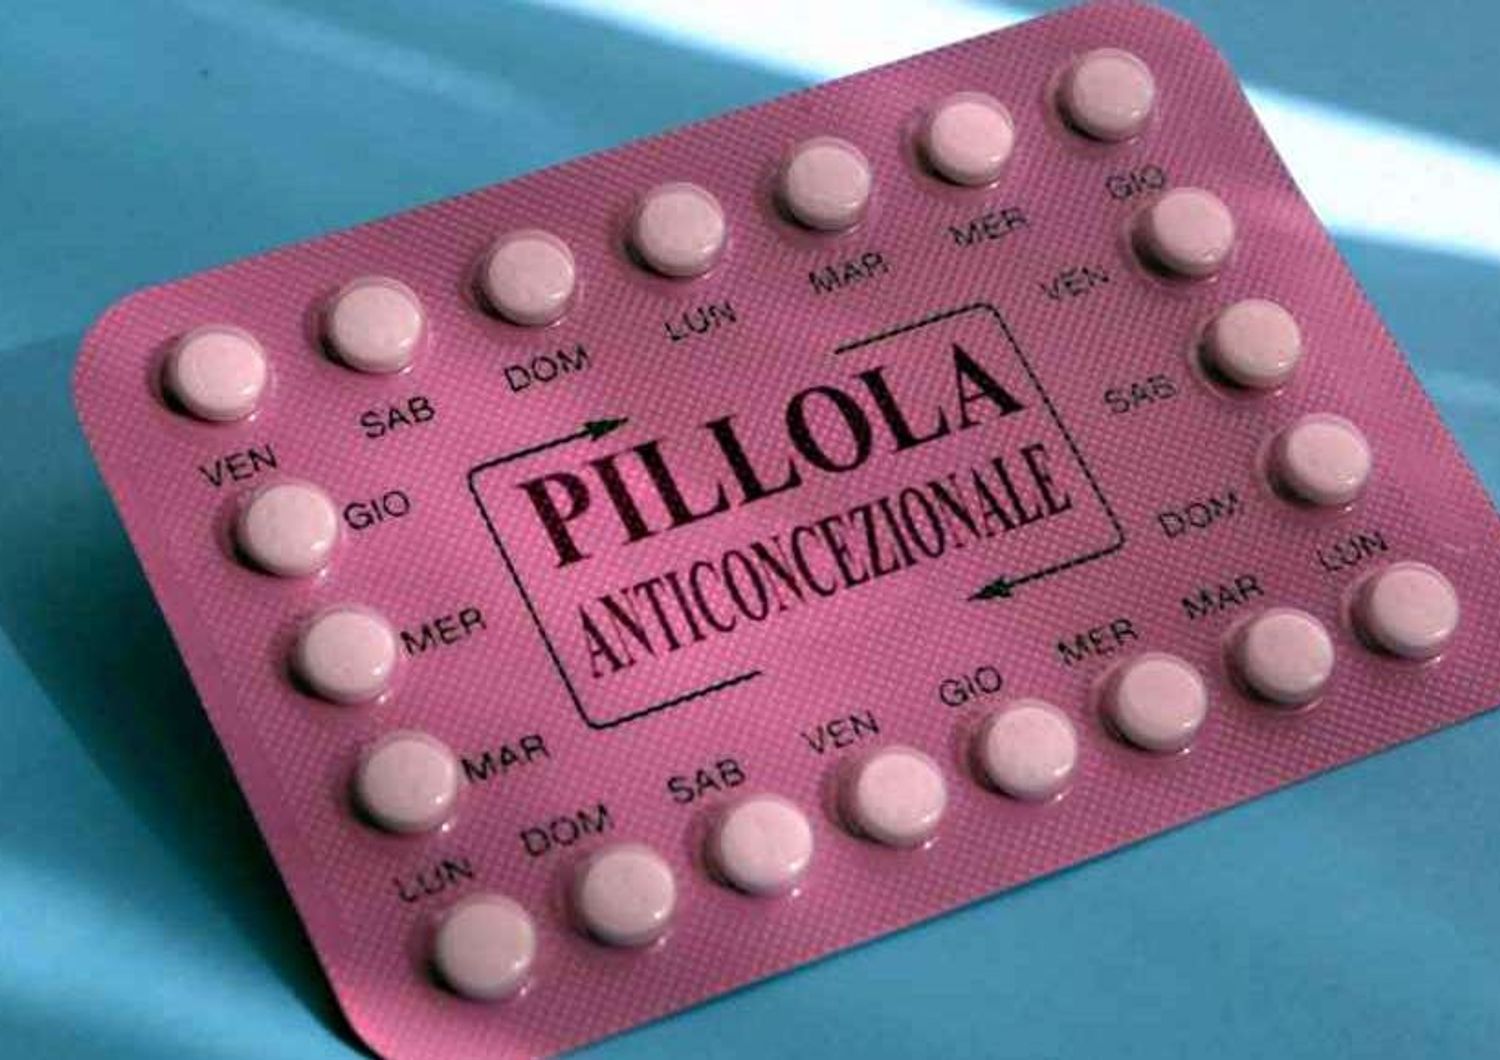 Sesso: esperti, non lasciare pillole anticoncezionali sotto sole